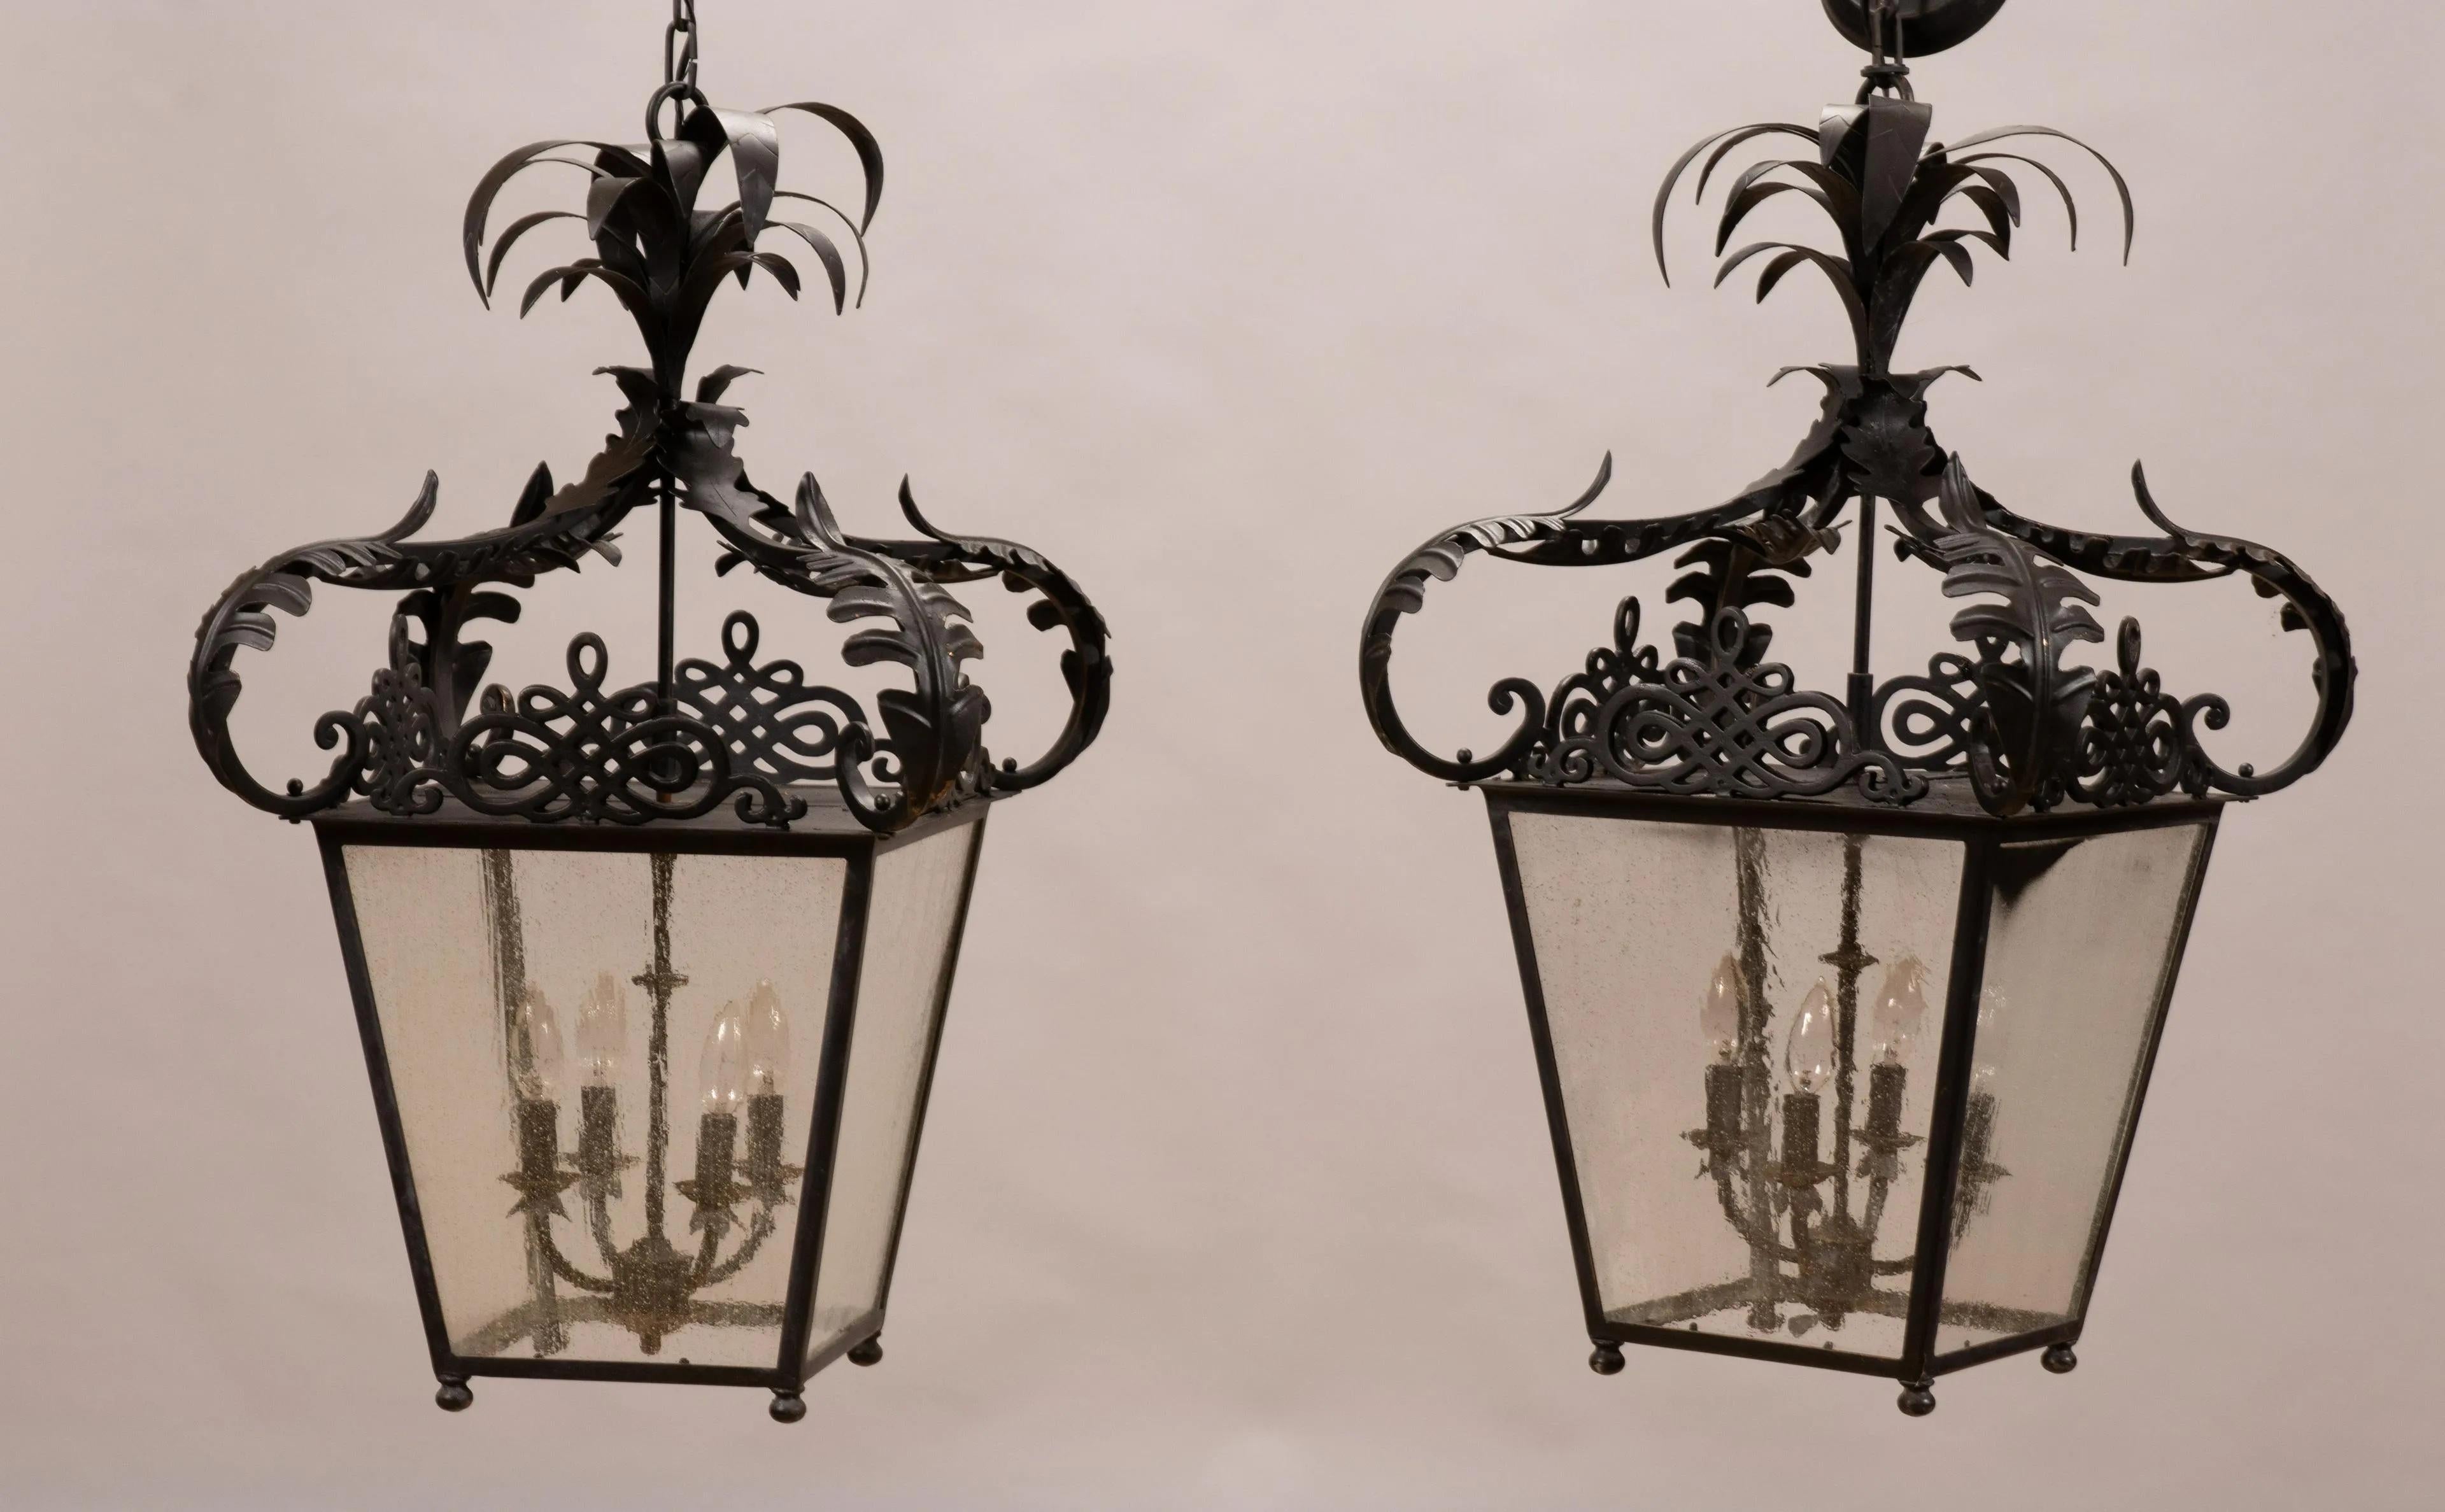 Black metal lantern chandeliers, pair, measures: Height 32